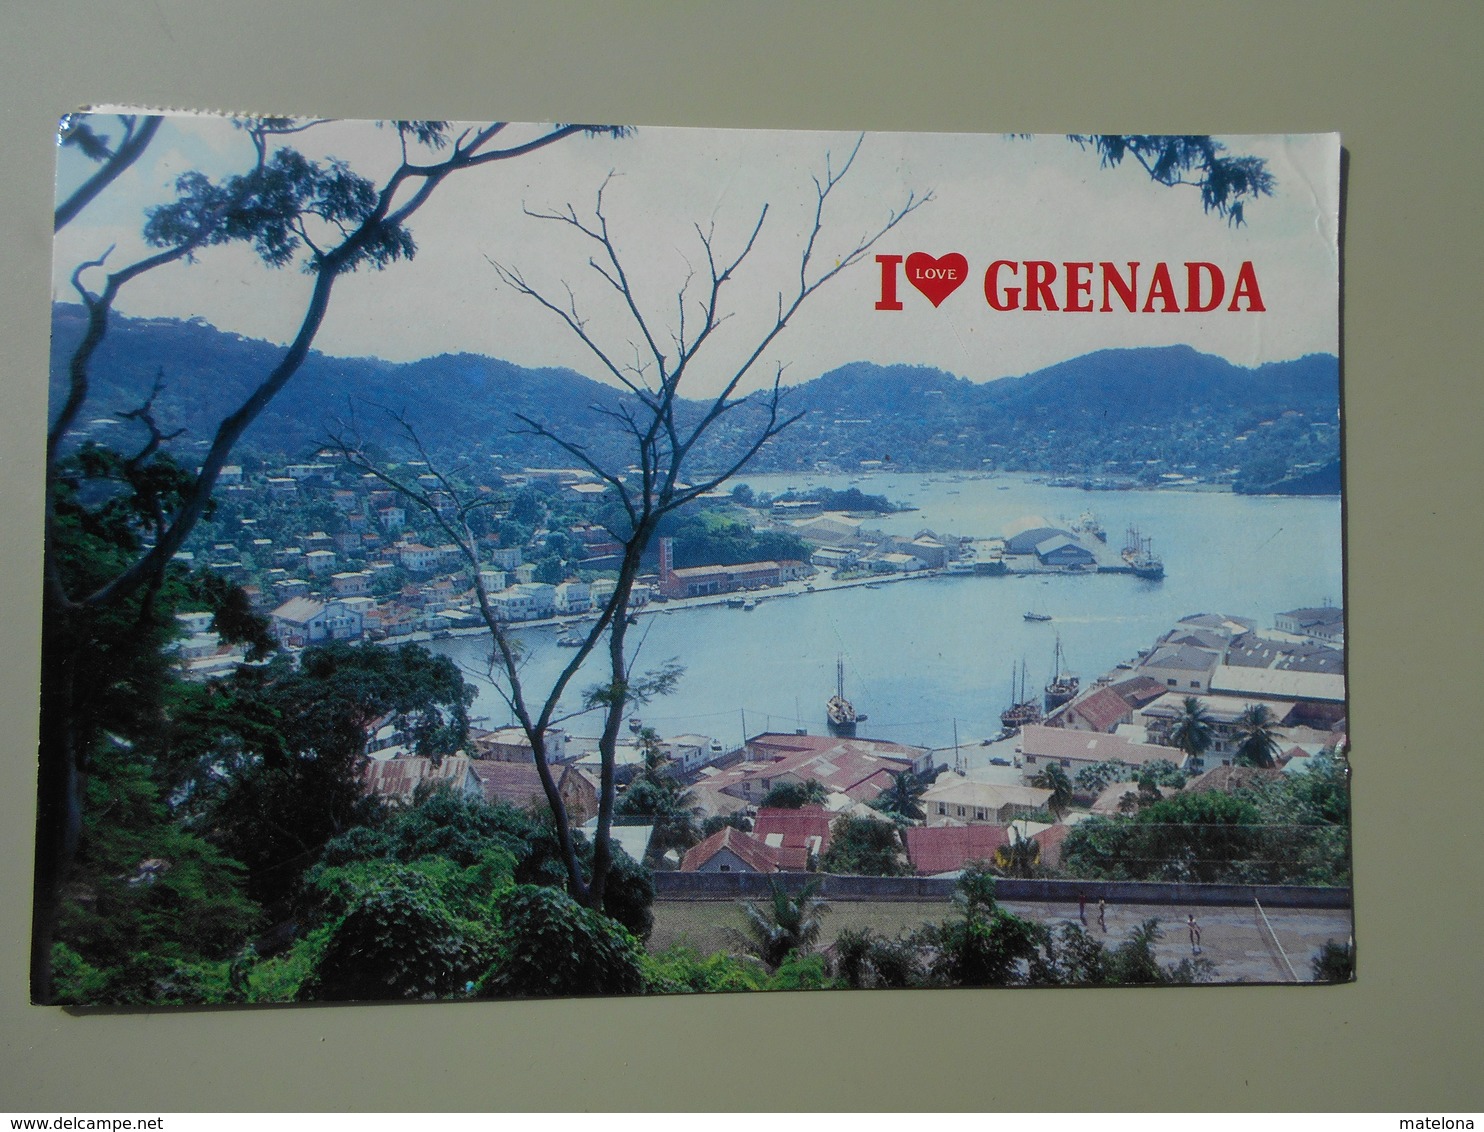 GRENADA I LOVE GRENADA - Grenada